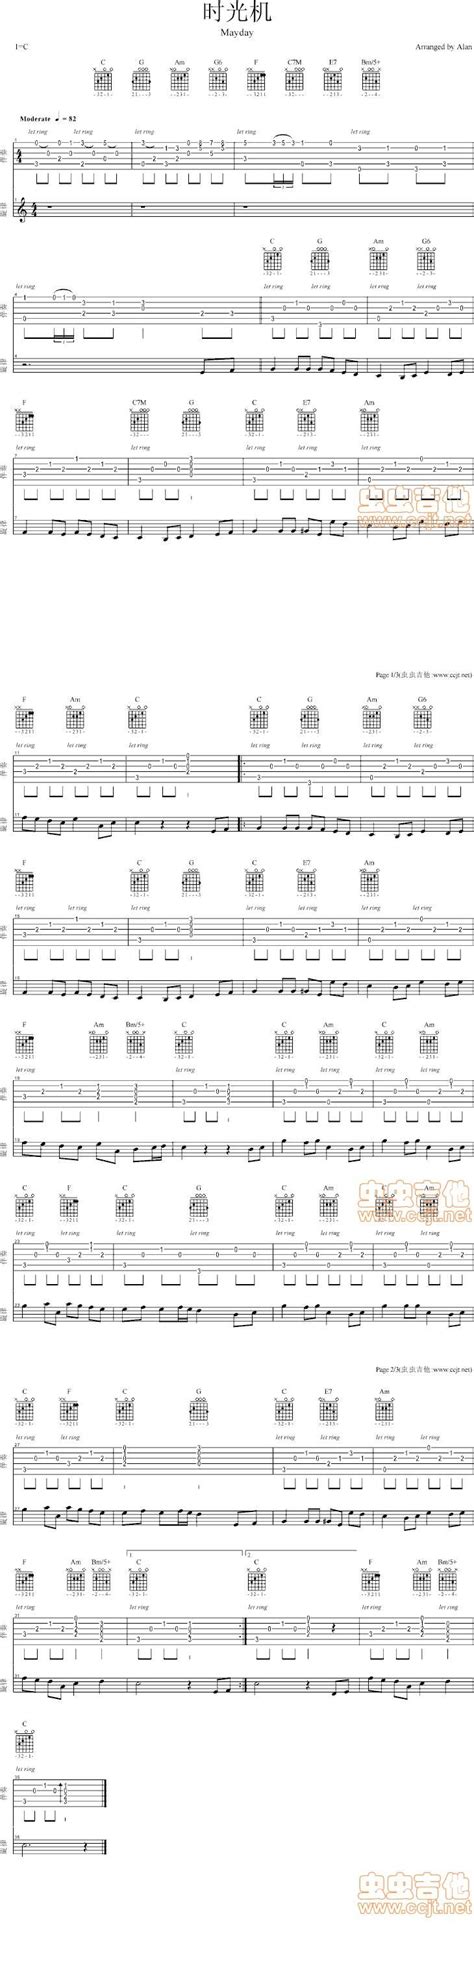 简化版《时光机》钢琴谱 - 初学者最易上手 - 五月天带指法钢琴谱子 - 钢琴简谱